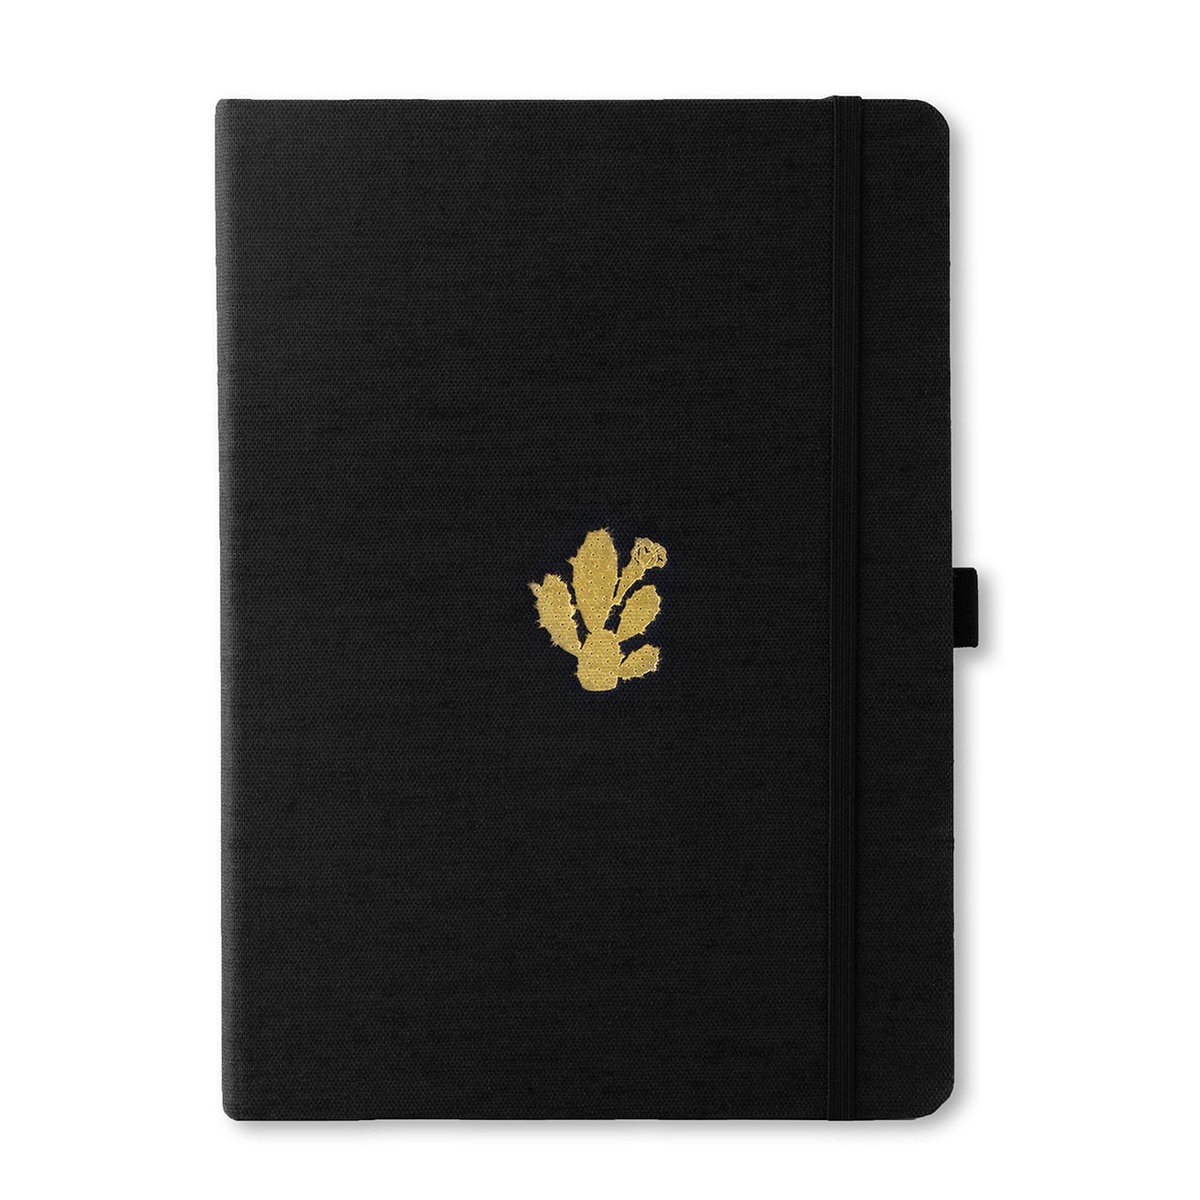 Dingbats* Pro B5 Notitieboek – Black Cactus Stippen – Bullet Journal met 160gsm Inktvrij Papier – Schetsboek met Harde Kaft, Binnenvak, Elastische Sluiting en Bladwijzer